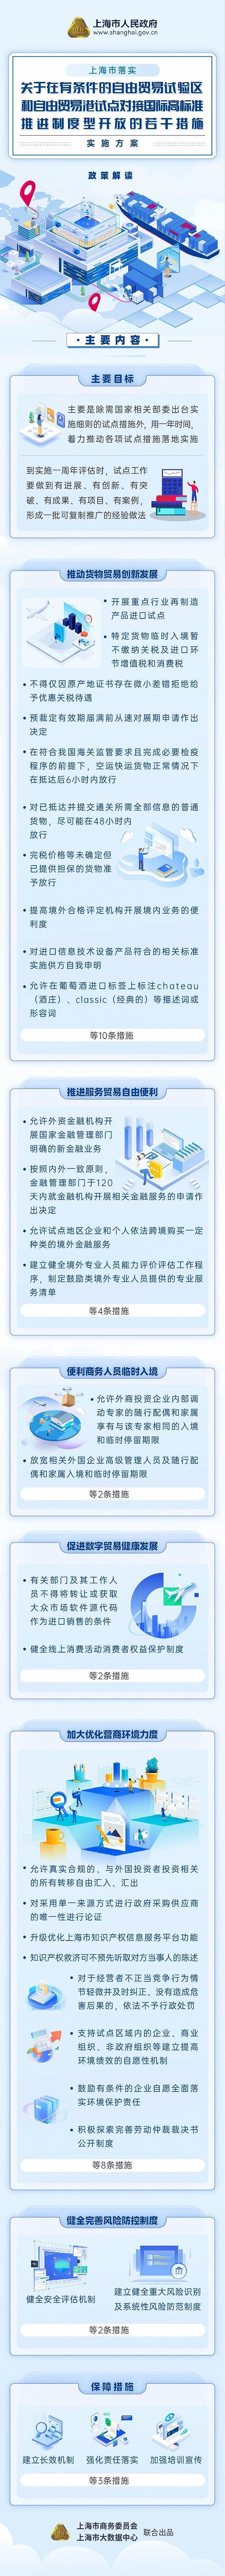 上海自贸区31条新政扩开放：允许外资金融机构开展新金融业务